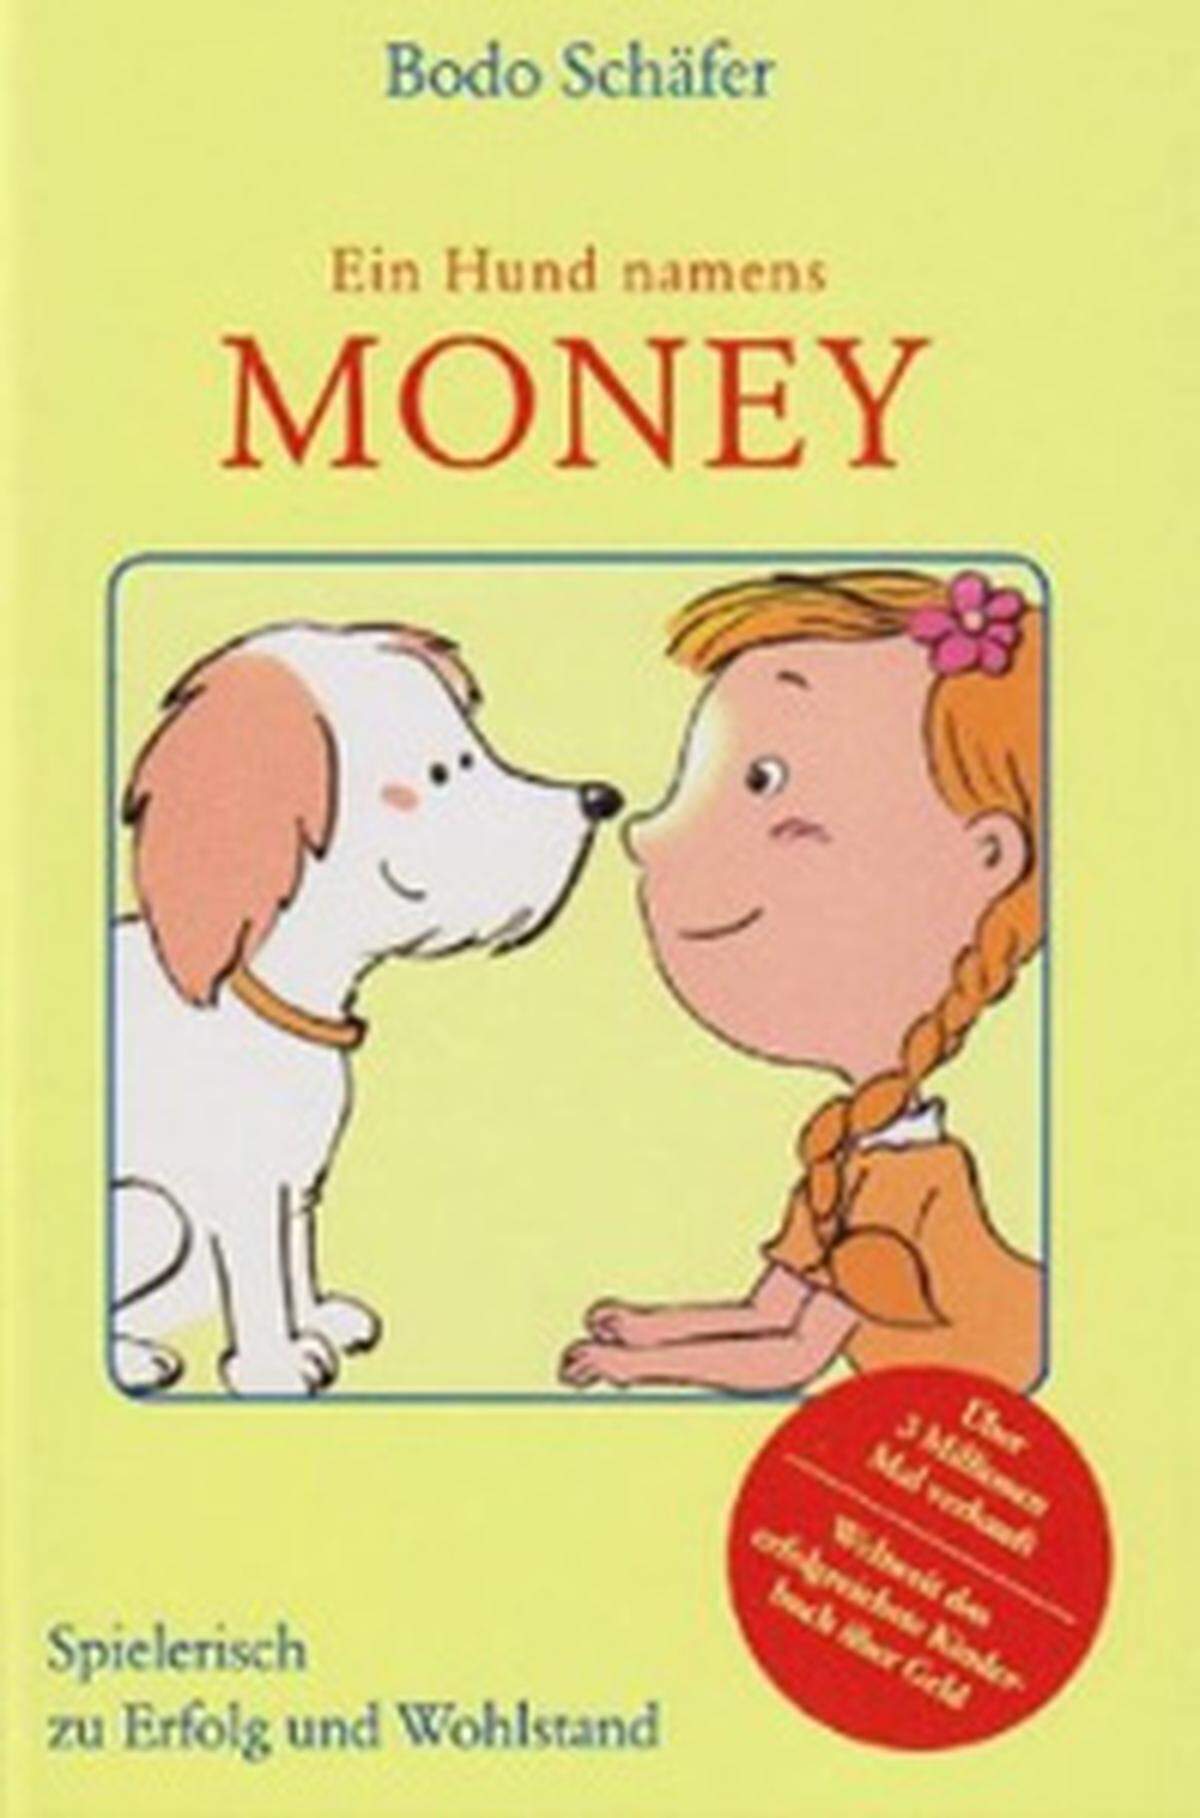 Laut Eigenwerbung ist "Ein Hund namens Money" des Money-Coachs Bodo Schäfer mit über drei Millionen verkauften Exemplaren das weltweit erfolgreichste Kinderbuch über Geld. Und: Nicht nur Kinder können einiges darüber lernen, wie man mit Geld am besten umgeht - sondern auch Erwachsene.